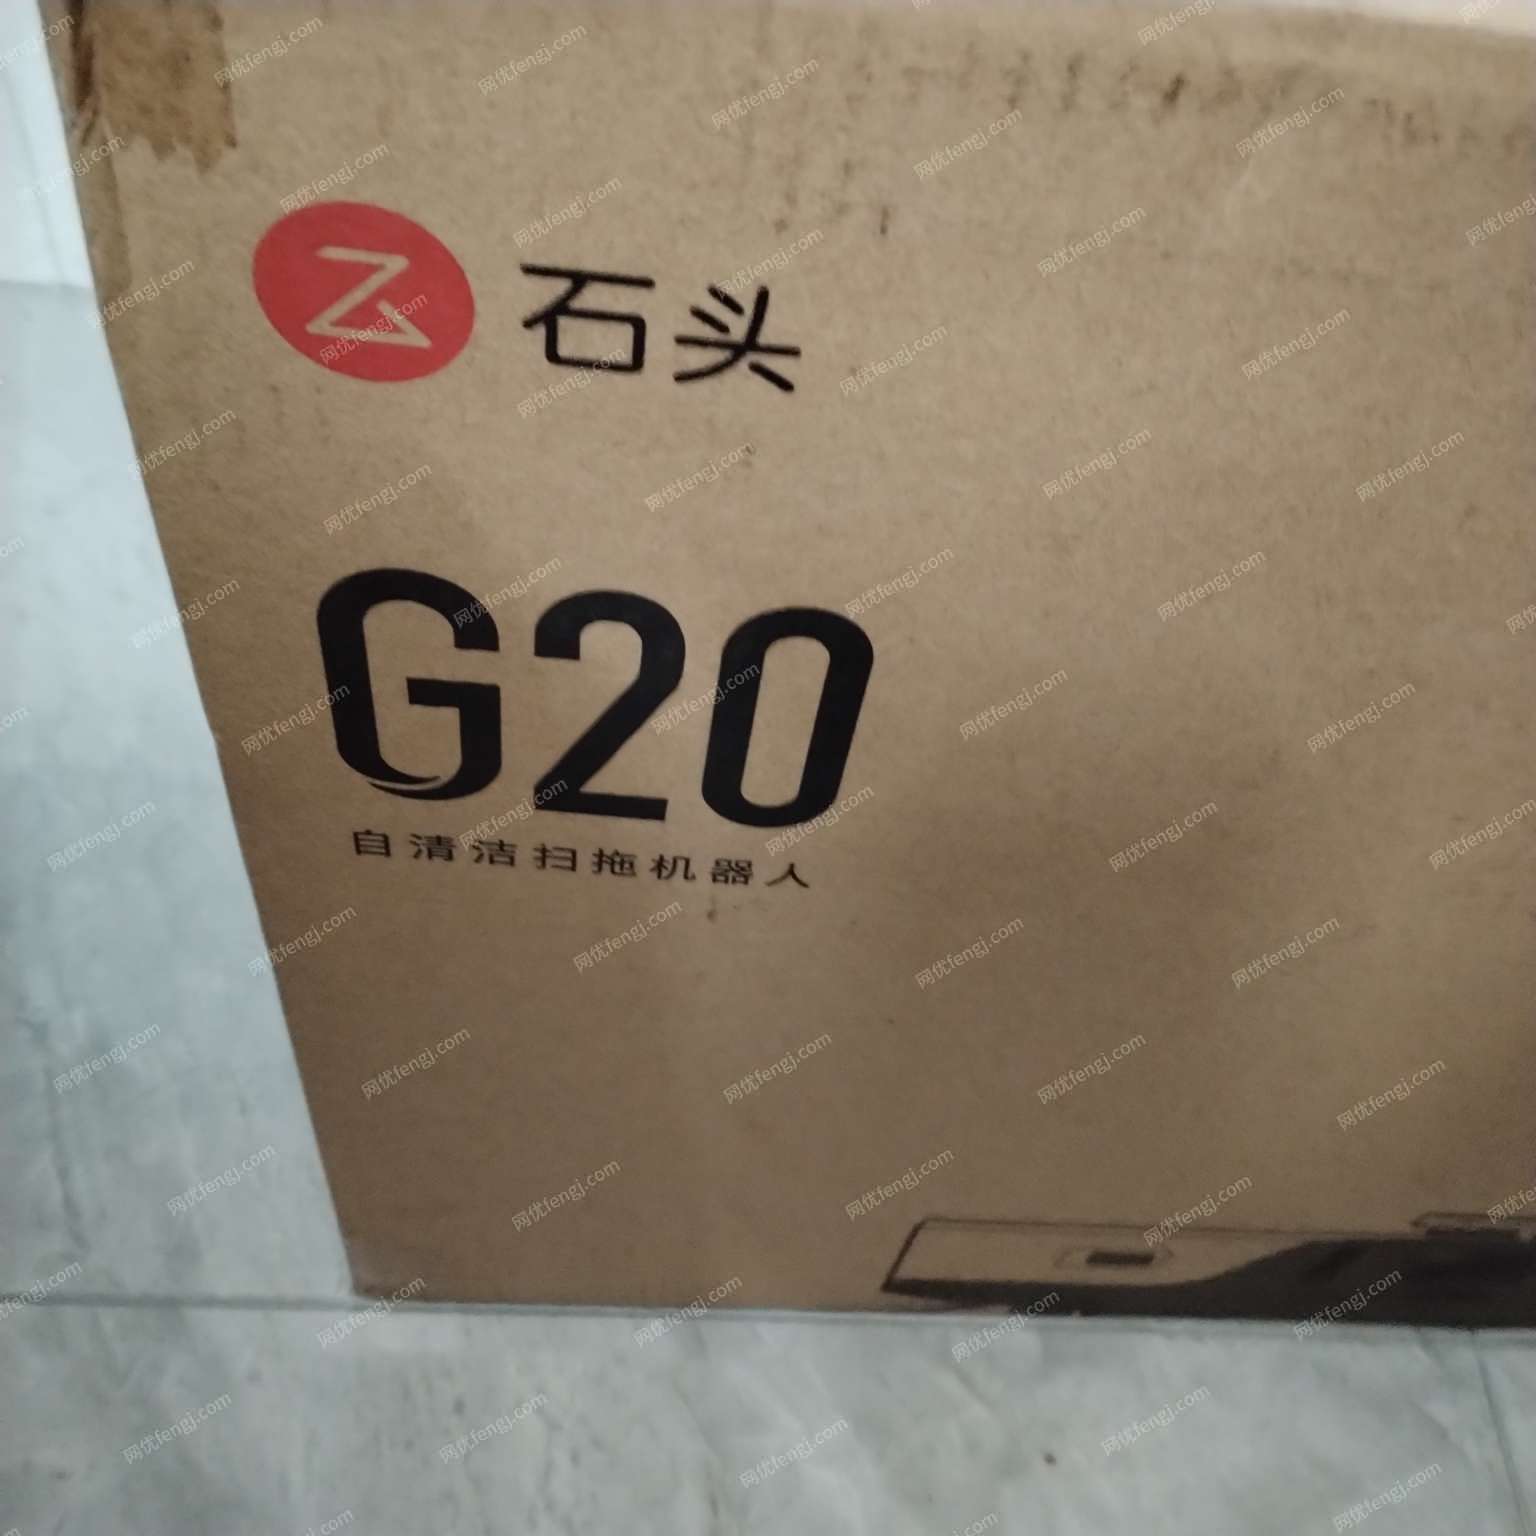 出售一台G20石头扫地机，全新未拆封的，京东价格4999，想要的联系我。